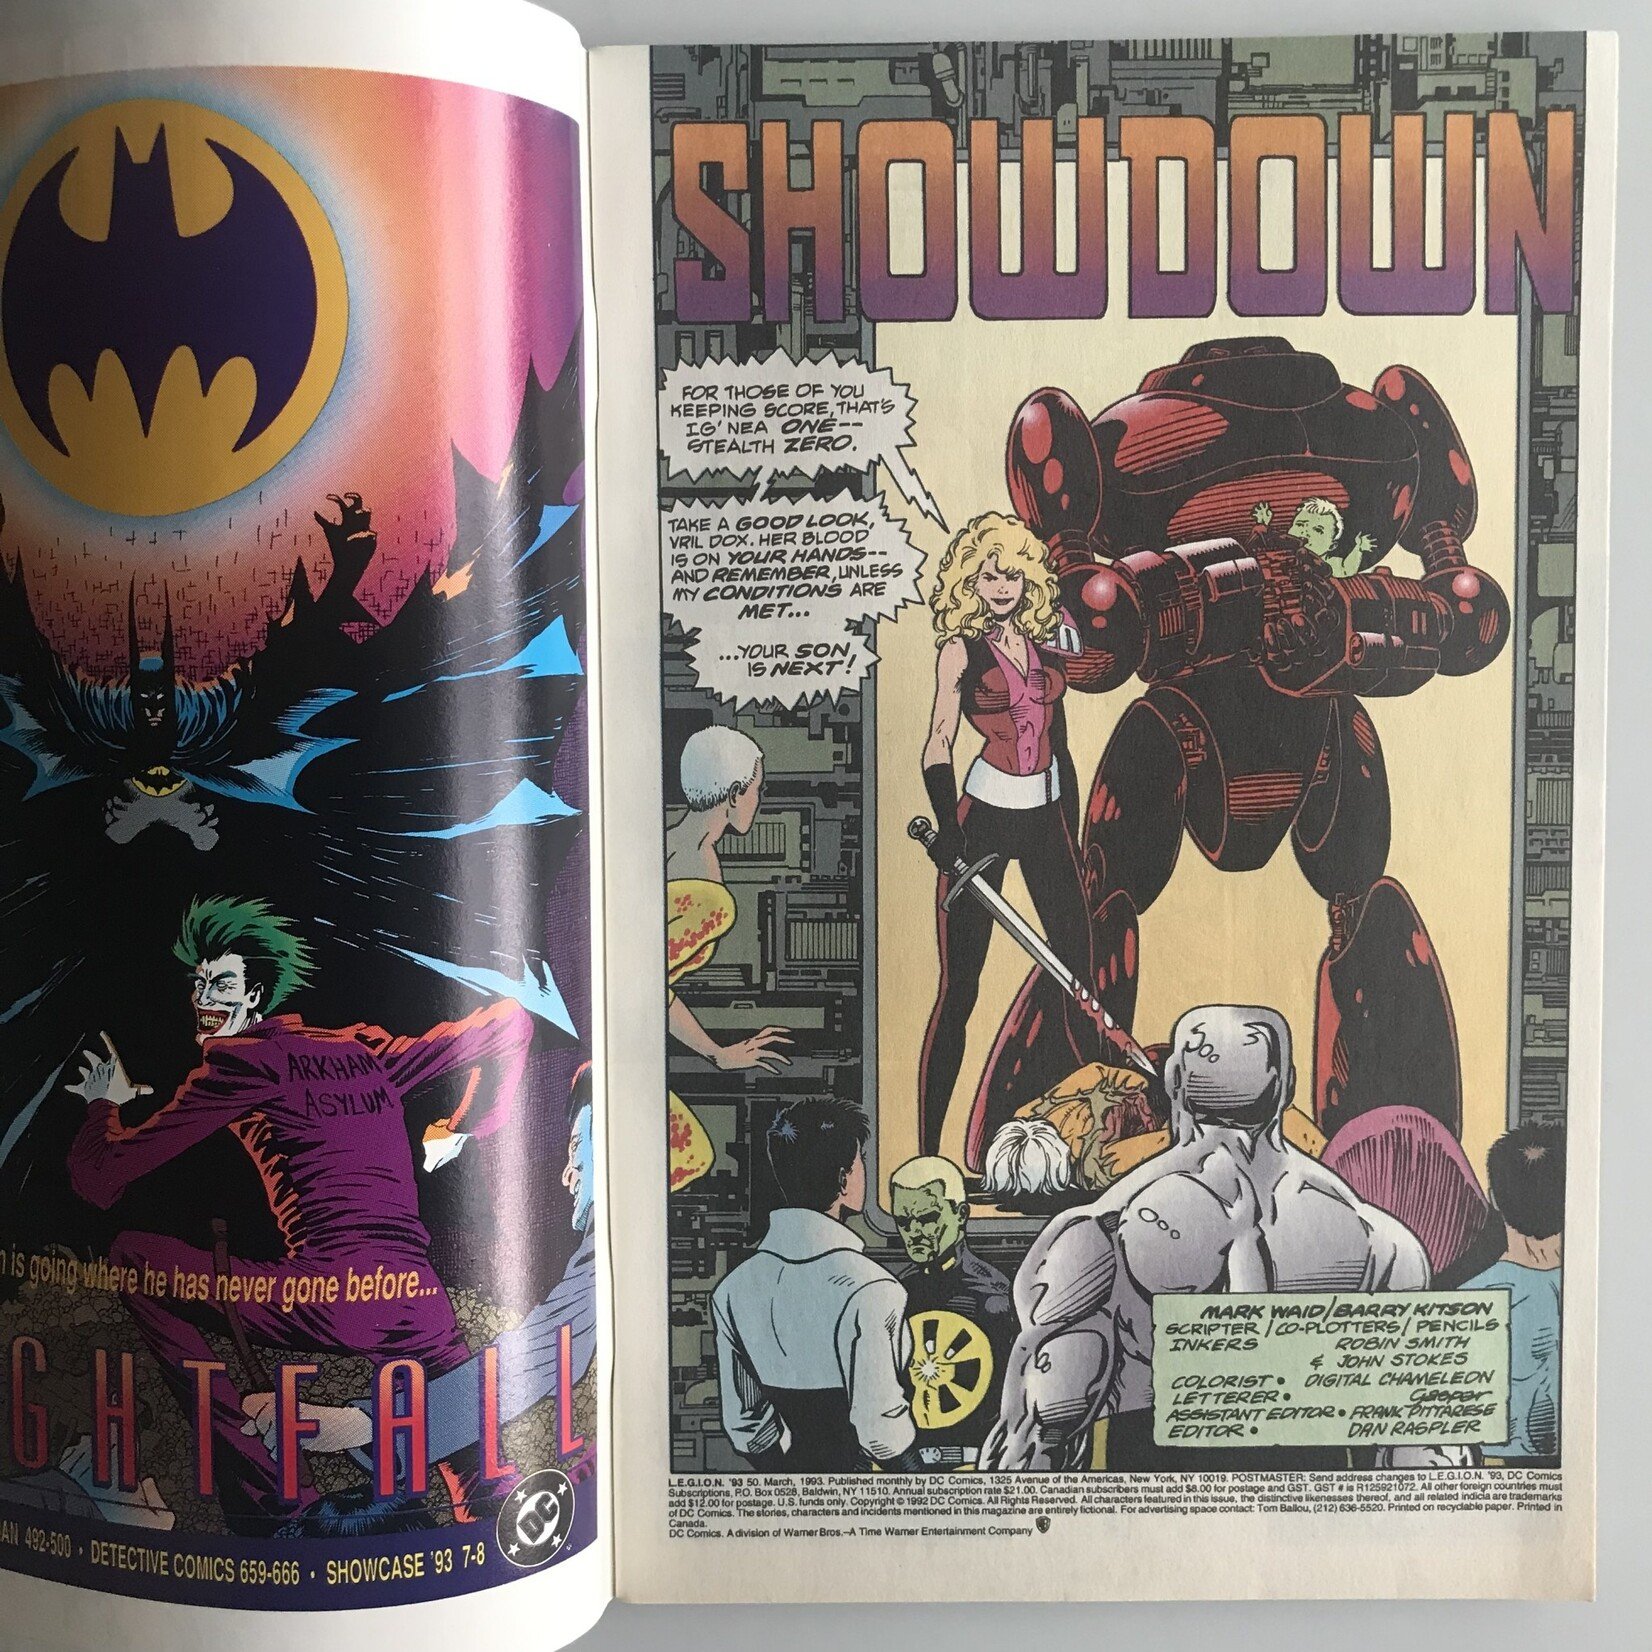 Legion - Vol. 1 #50 March 1993 - Comic Book